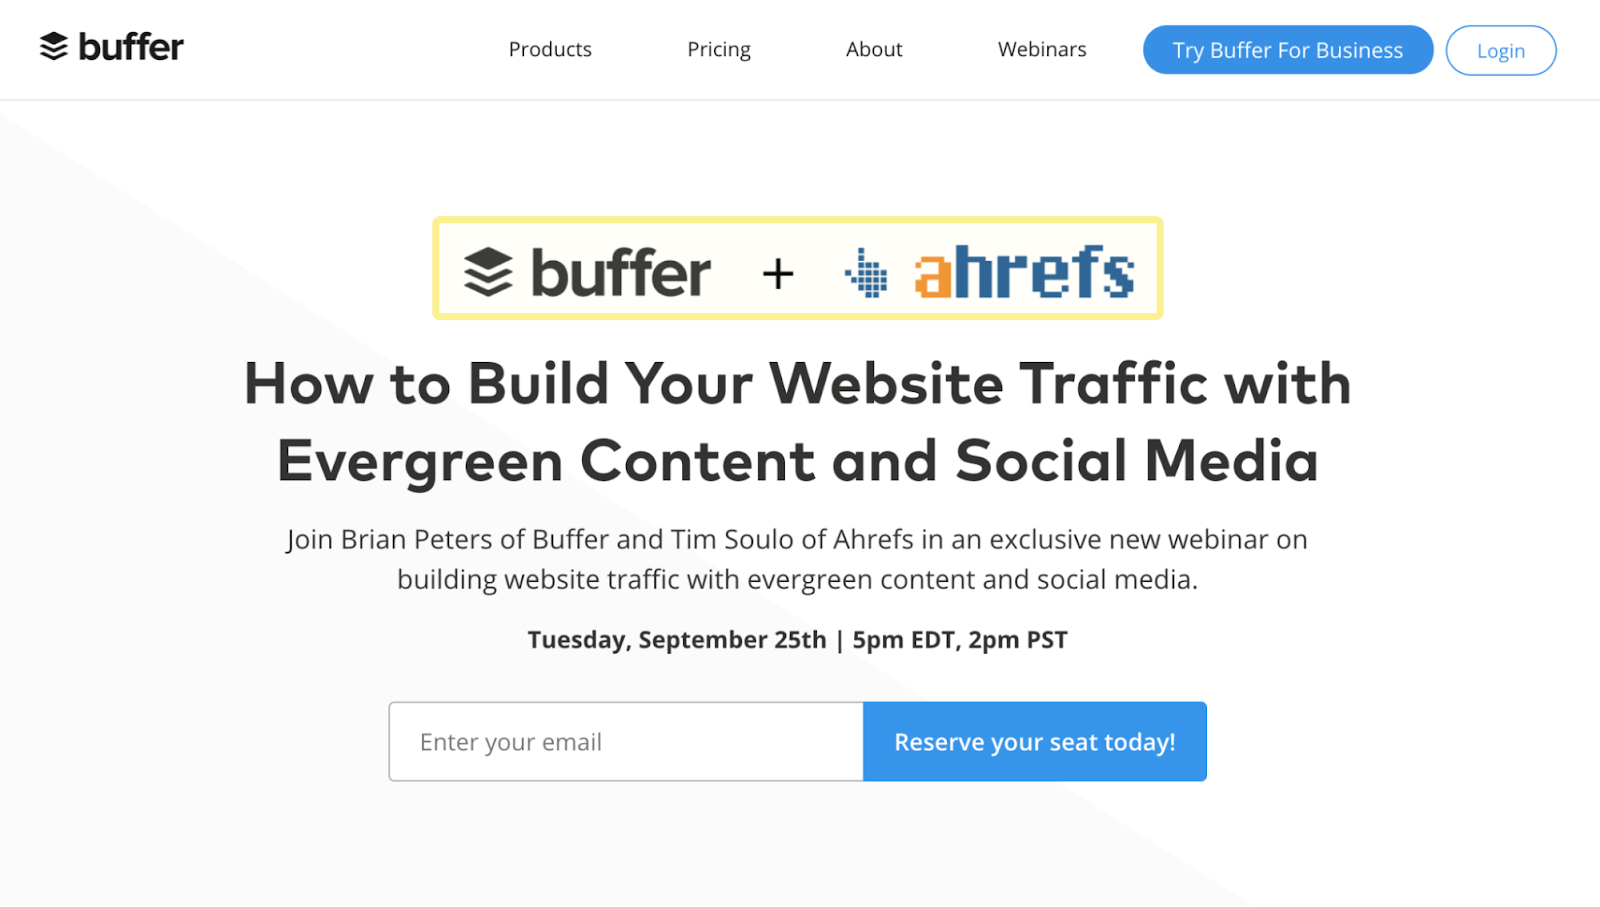 Buffer + Ahrefs joint webinar